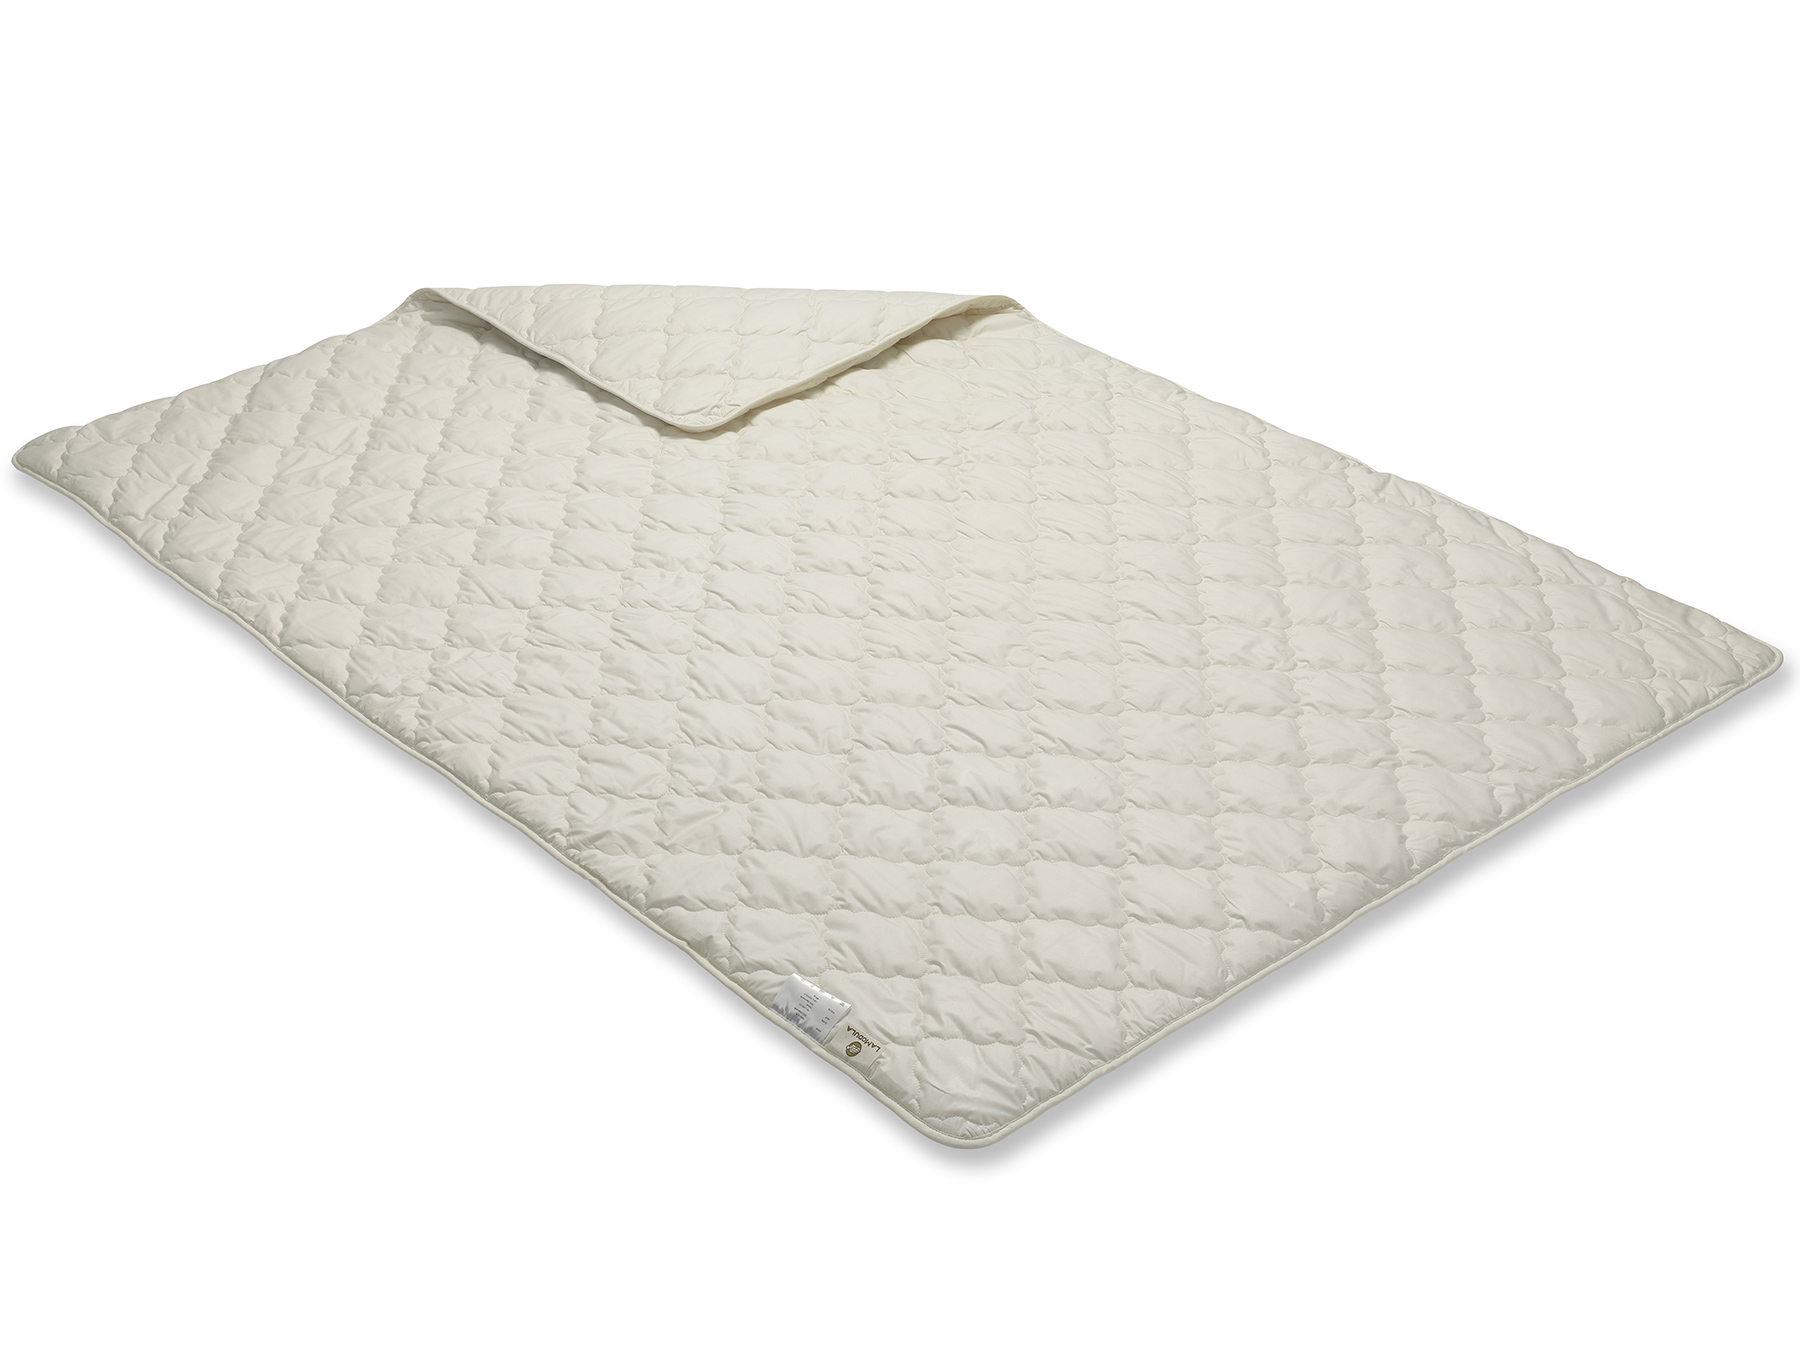 Diese Decke wird mit der Vielnadeltechnik hergestellt - so erhält sie ihr gleichmäßiges Muster. 